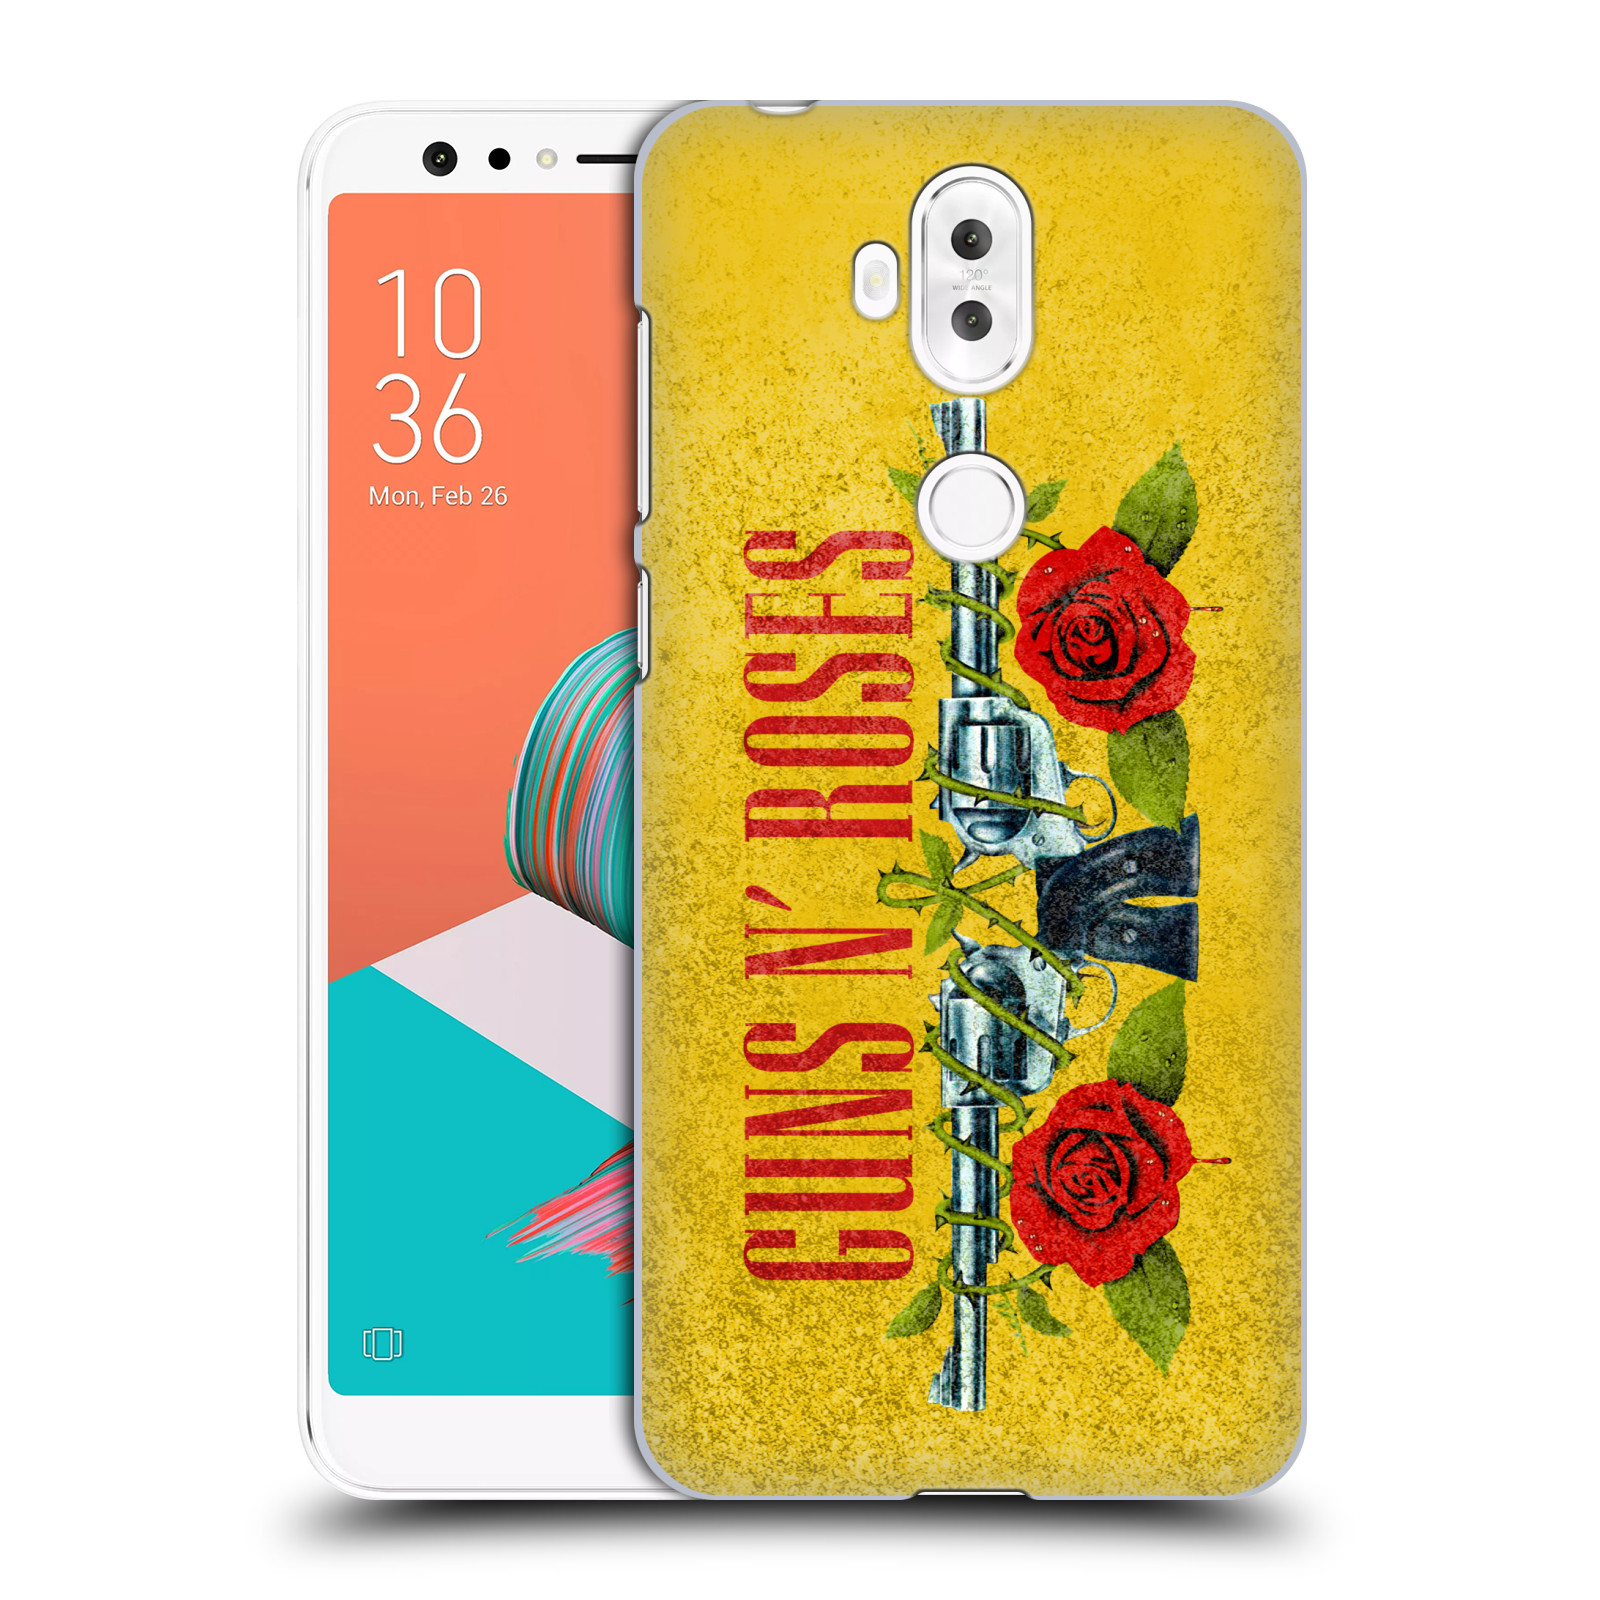 HEAD CASE plastový obal na mobil Asus Zenfone 5 LITE ZC600KL hudební skupina Guns N Roses pistole a růže žluté pozadí